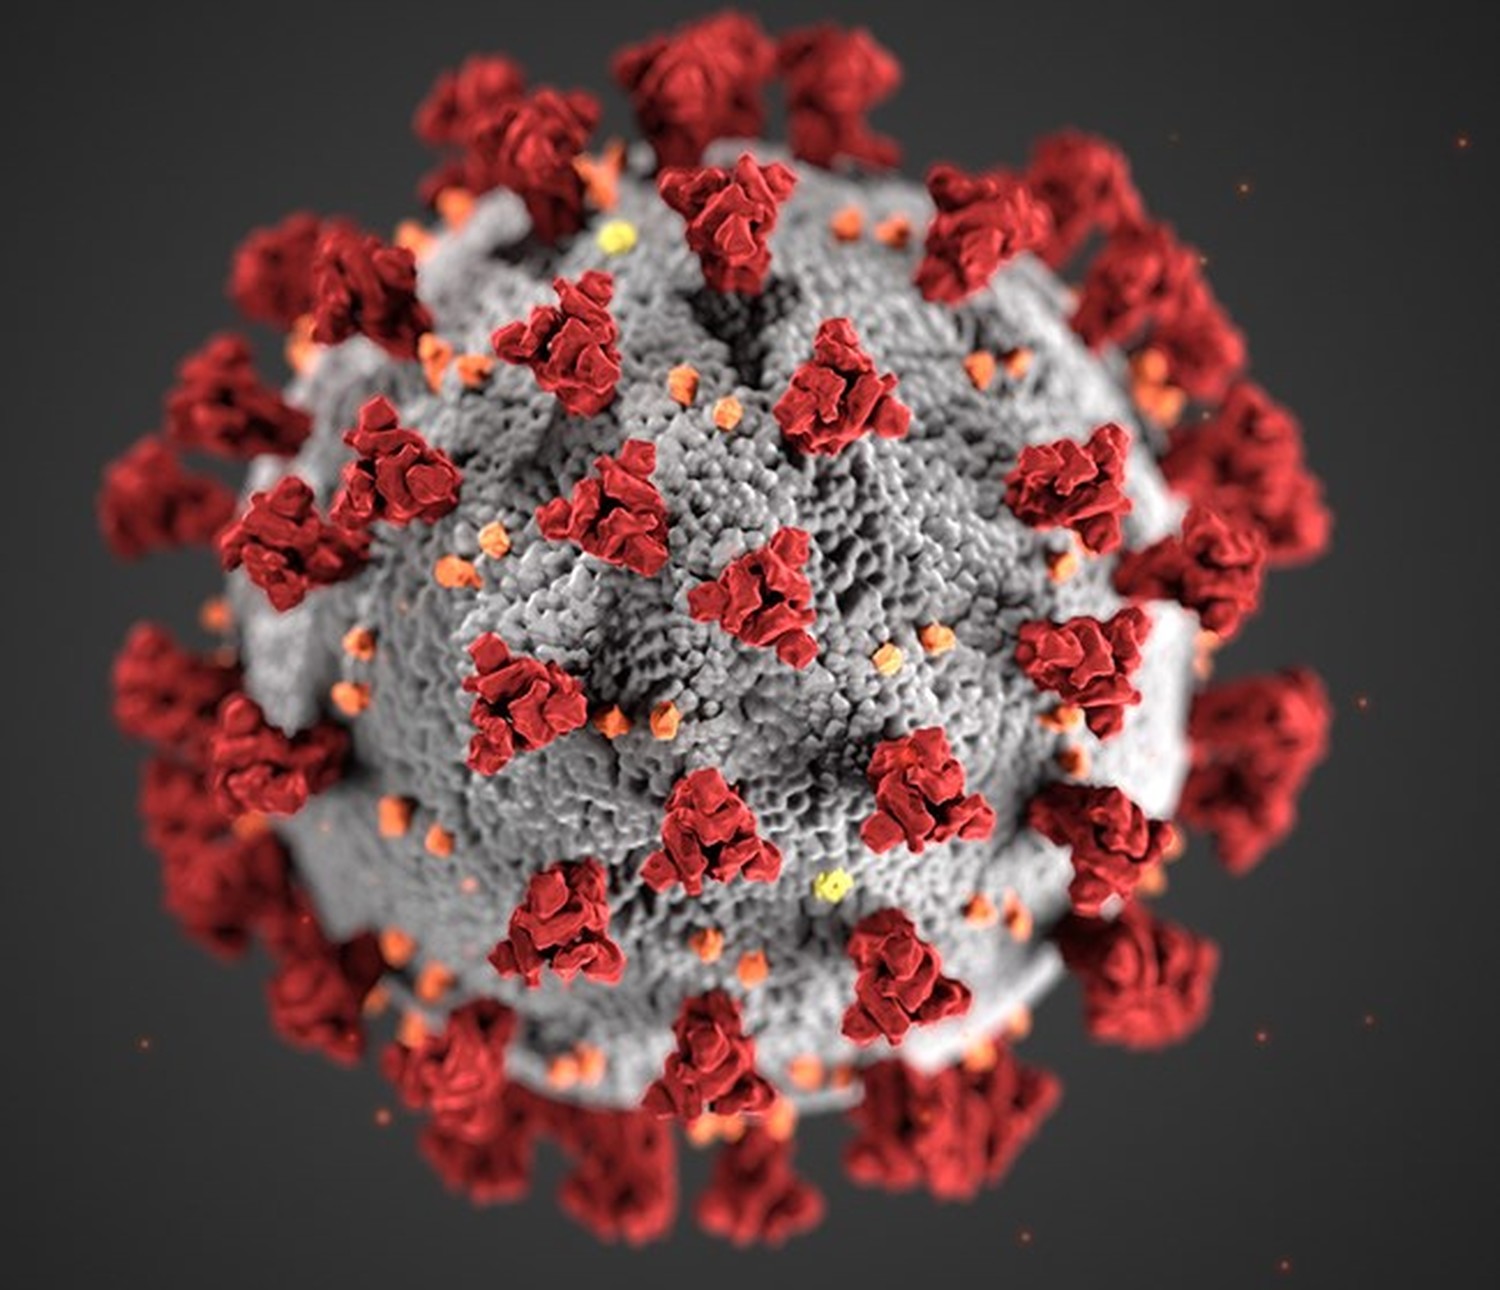 CDC-coronavirus-image-23311-for-web-2.jpg